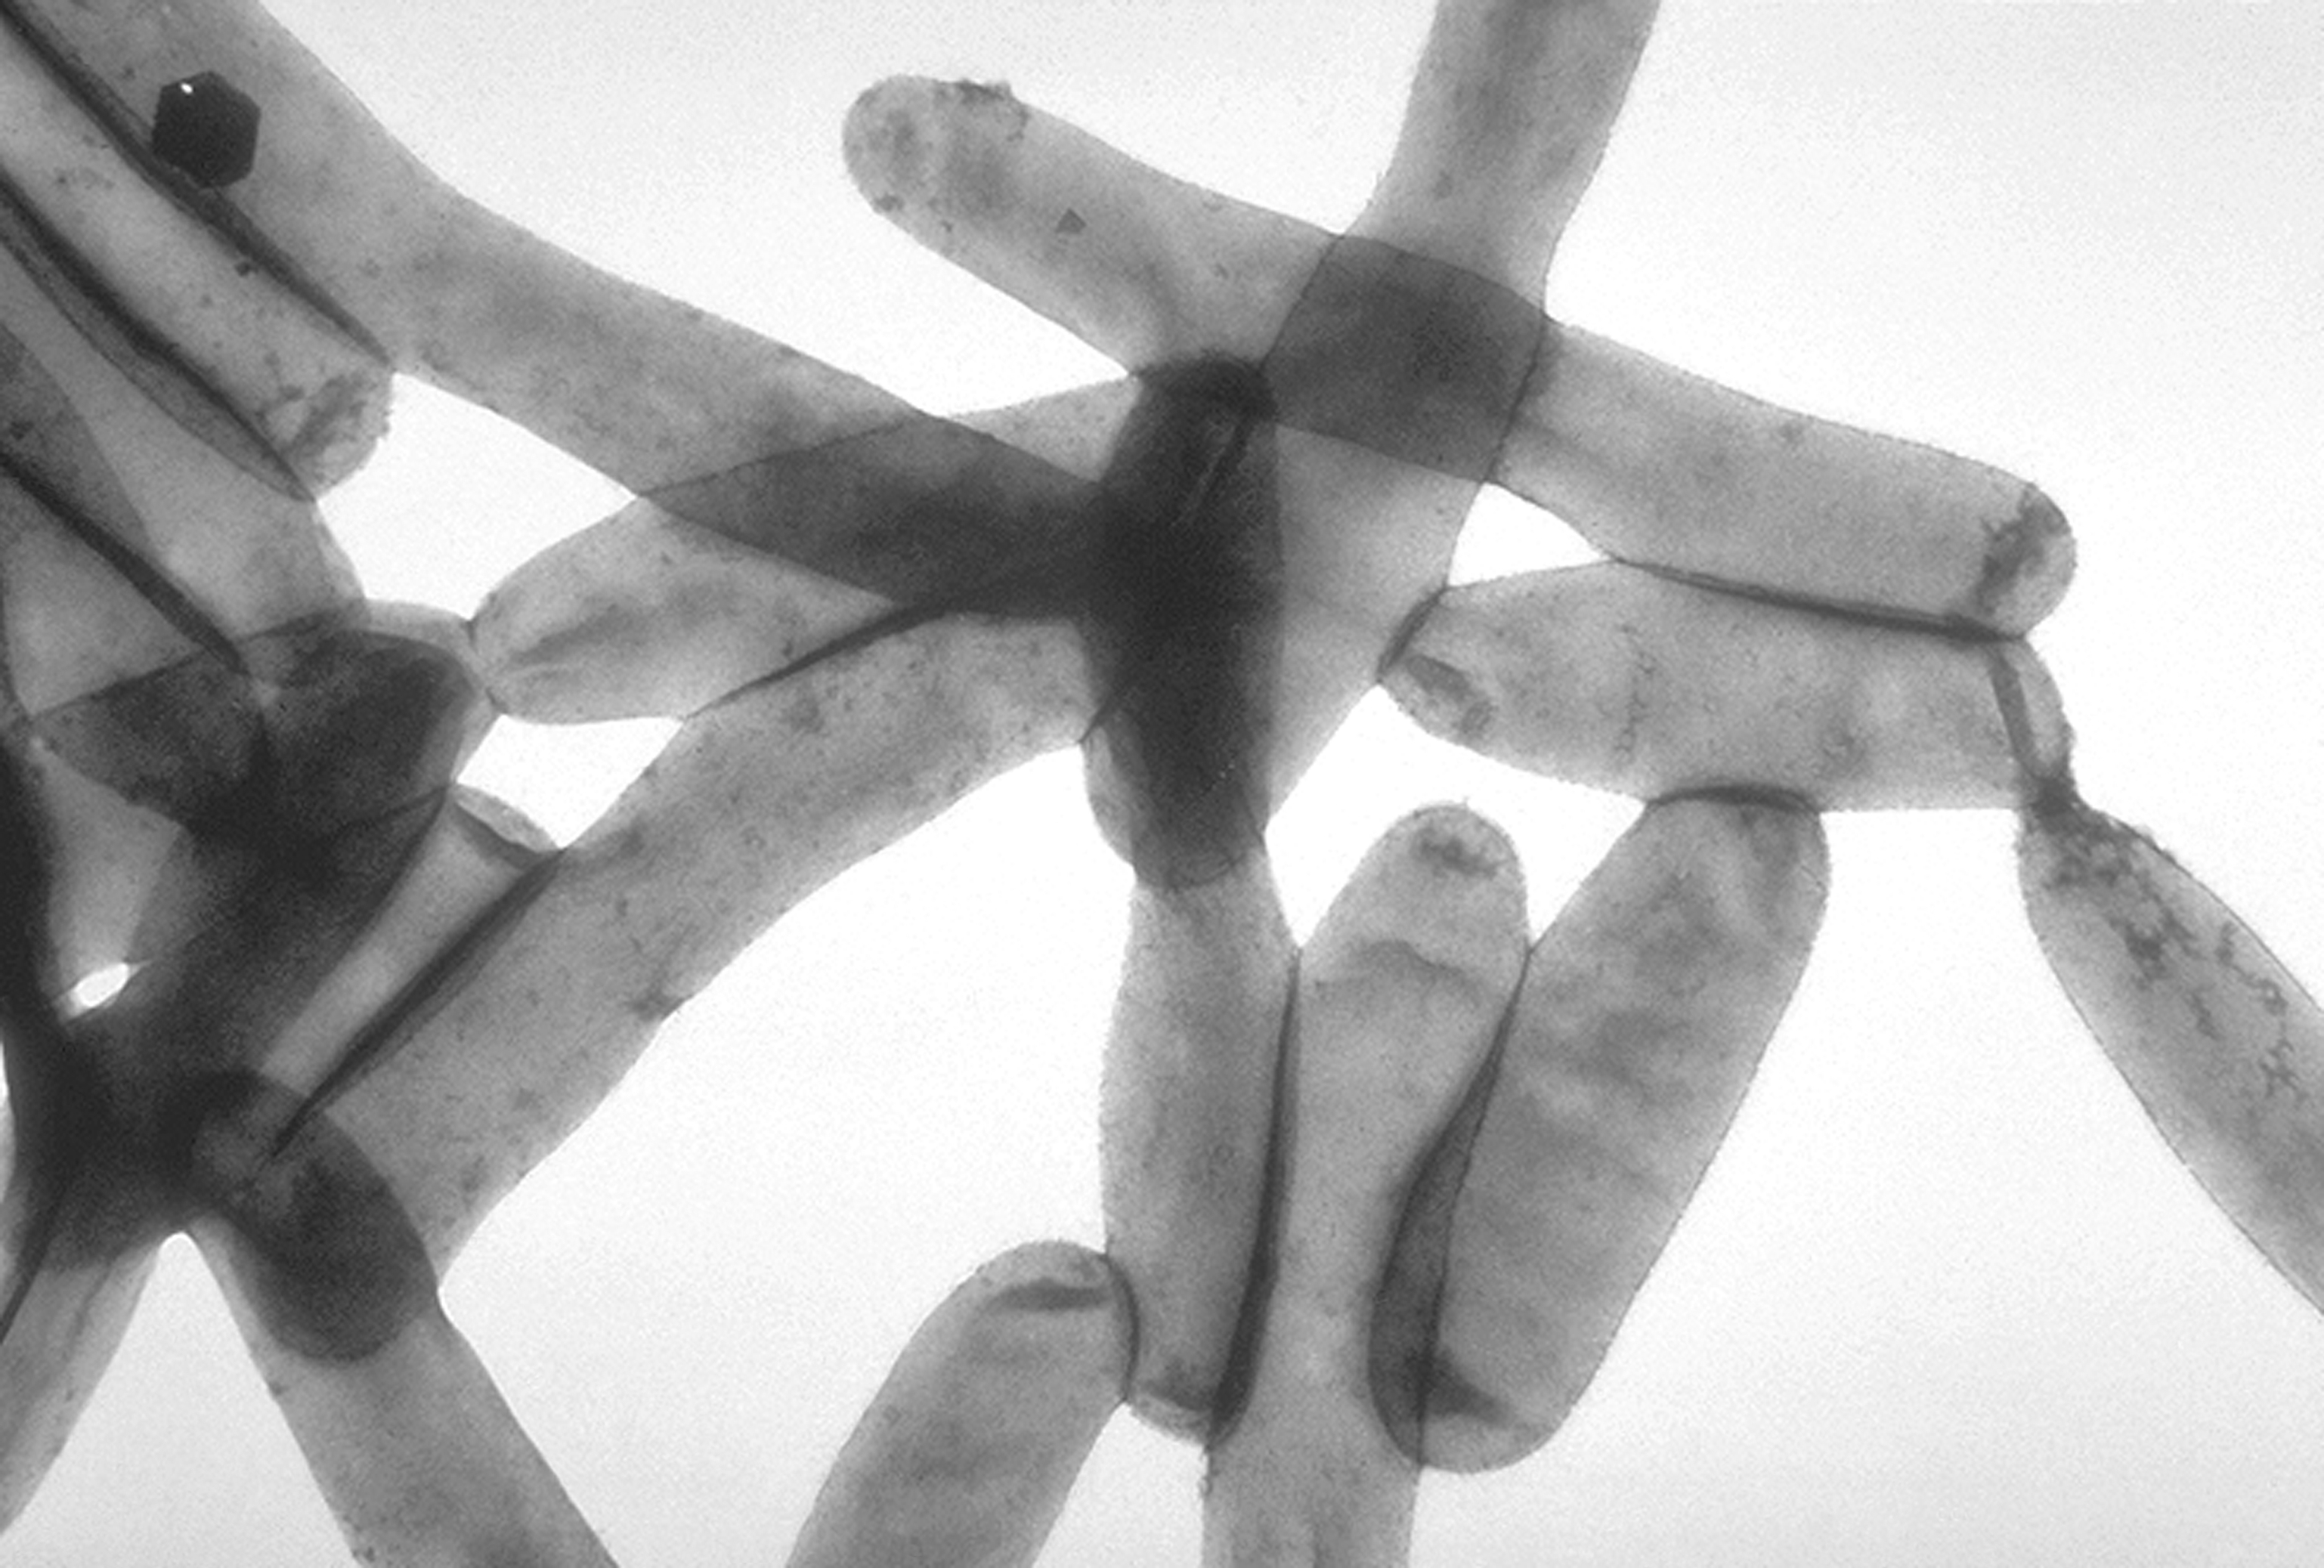 Legionella pneumophila image found at Wikipedia.org